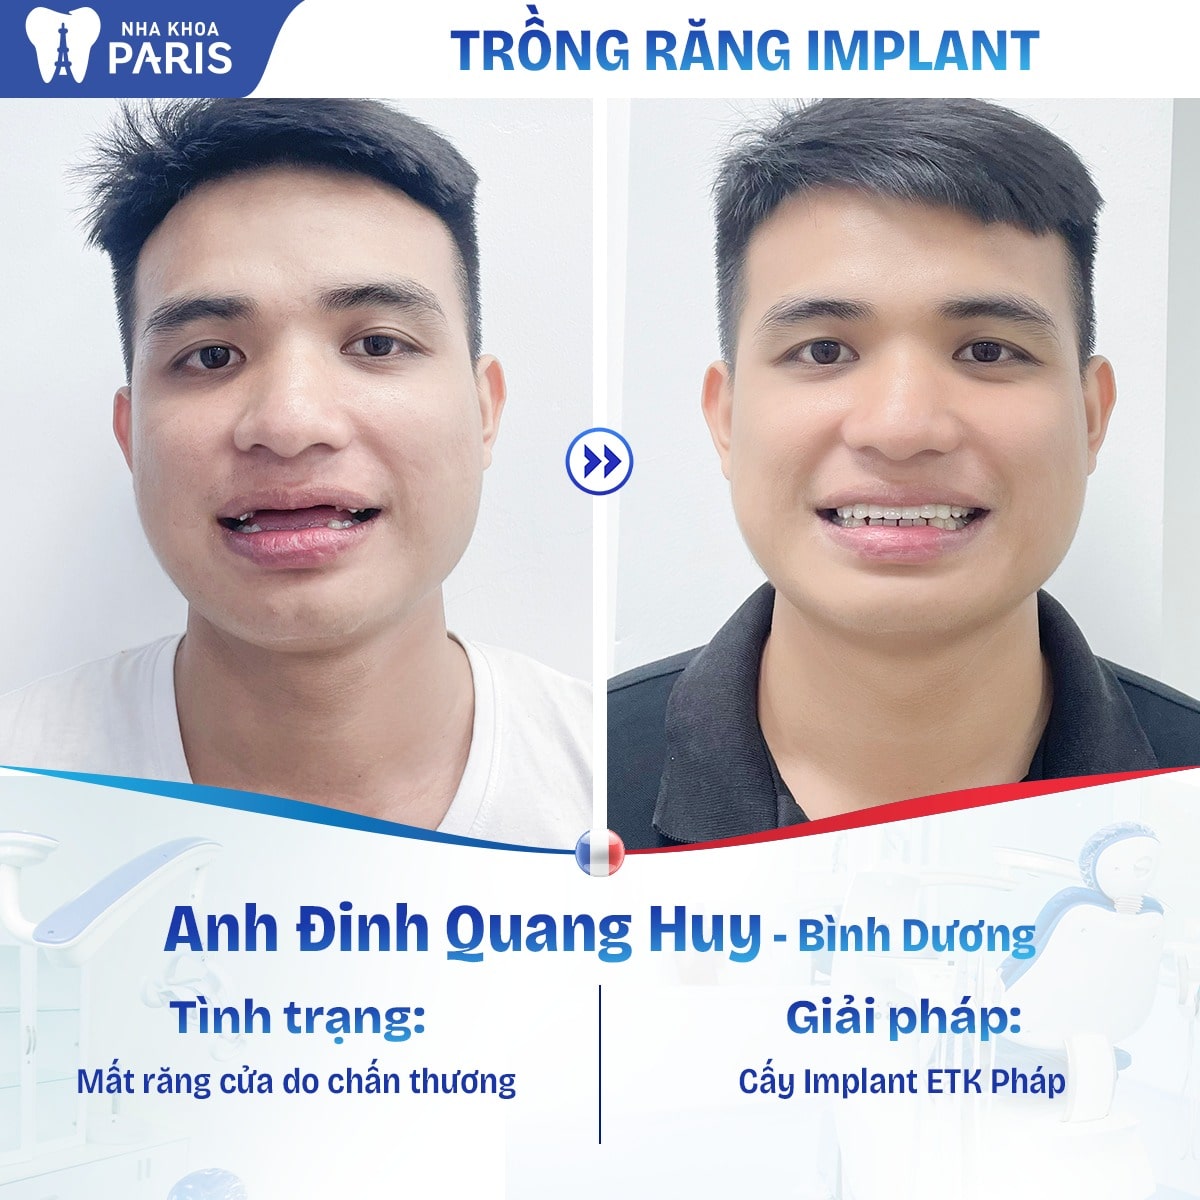 Khách hàng Quang Huy lựa chọn giải pháp cấy ghép Implant ETK Pháp